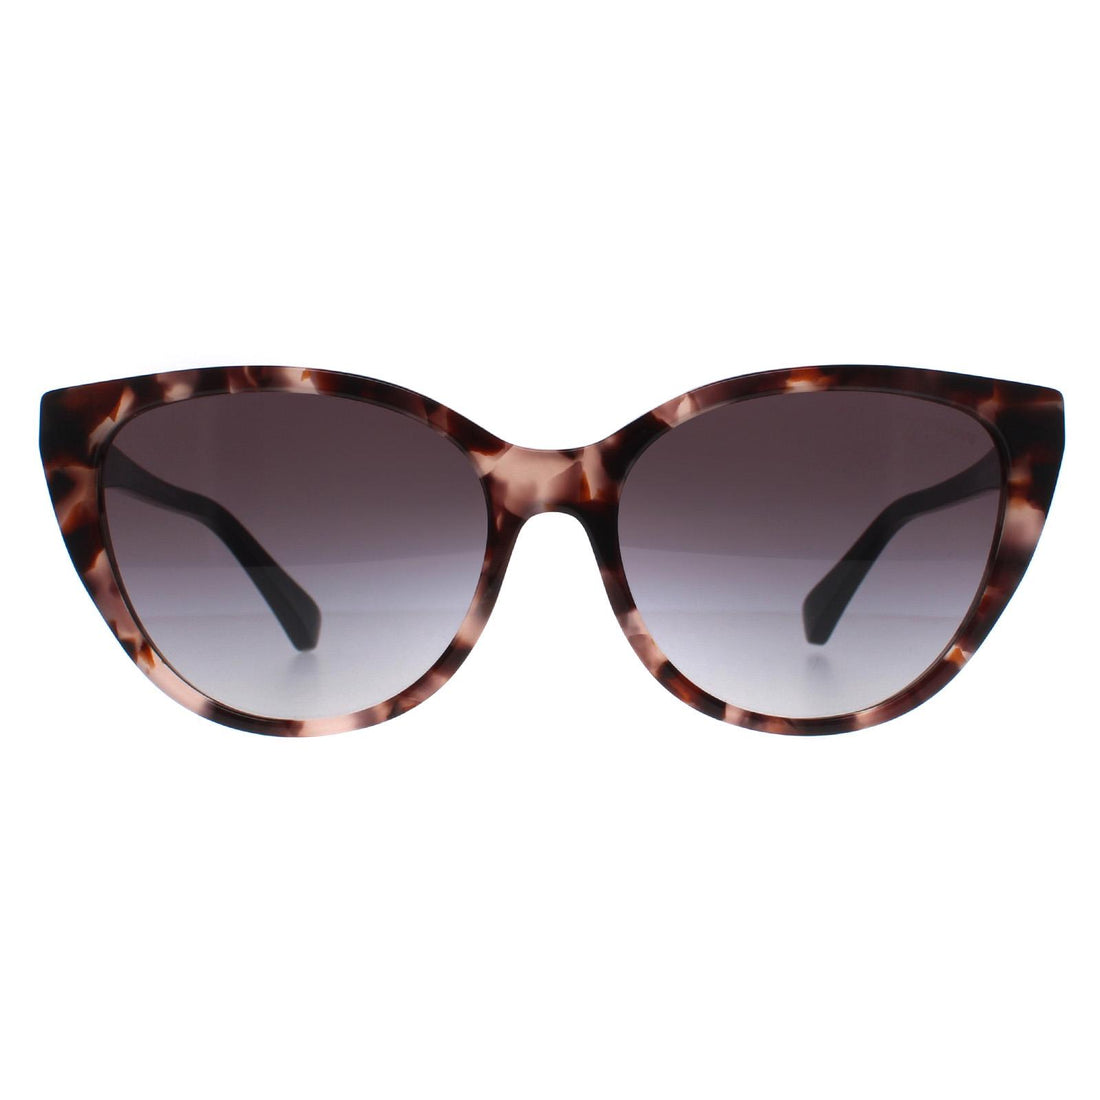 Emporio Armani EA4162 Sunglasses Shiny Pink Havana / Grey Gradient